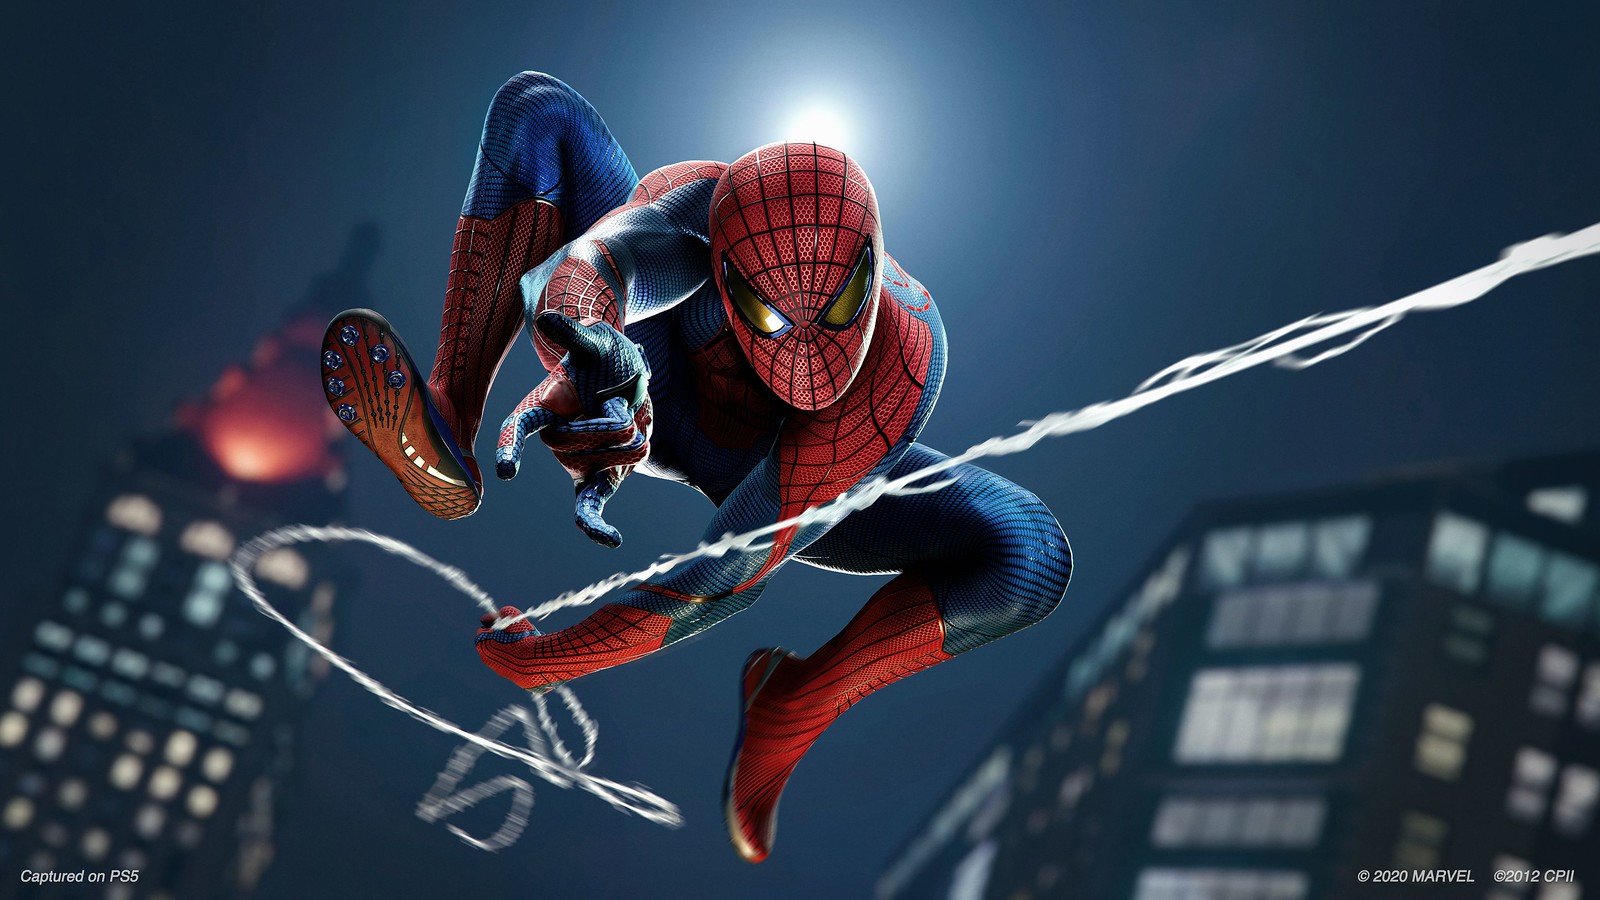 Do PS1 ao PS5: 10 melhores jogos do Homem-Aranha